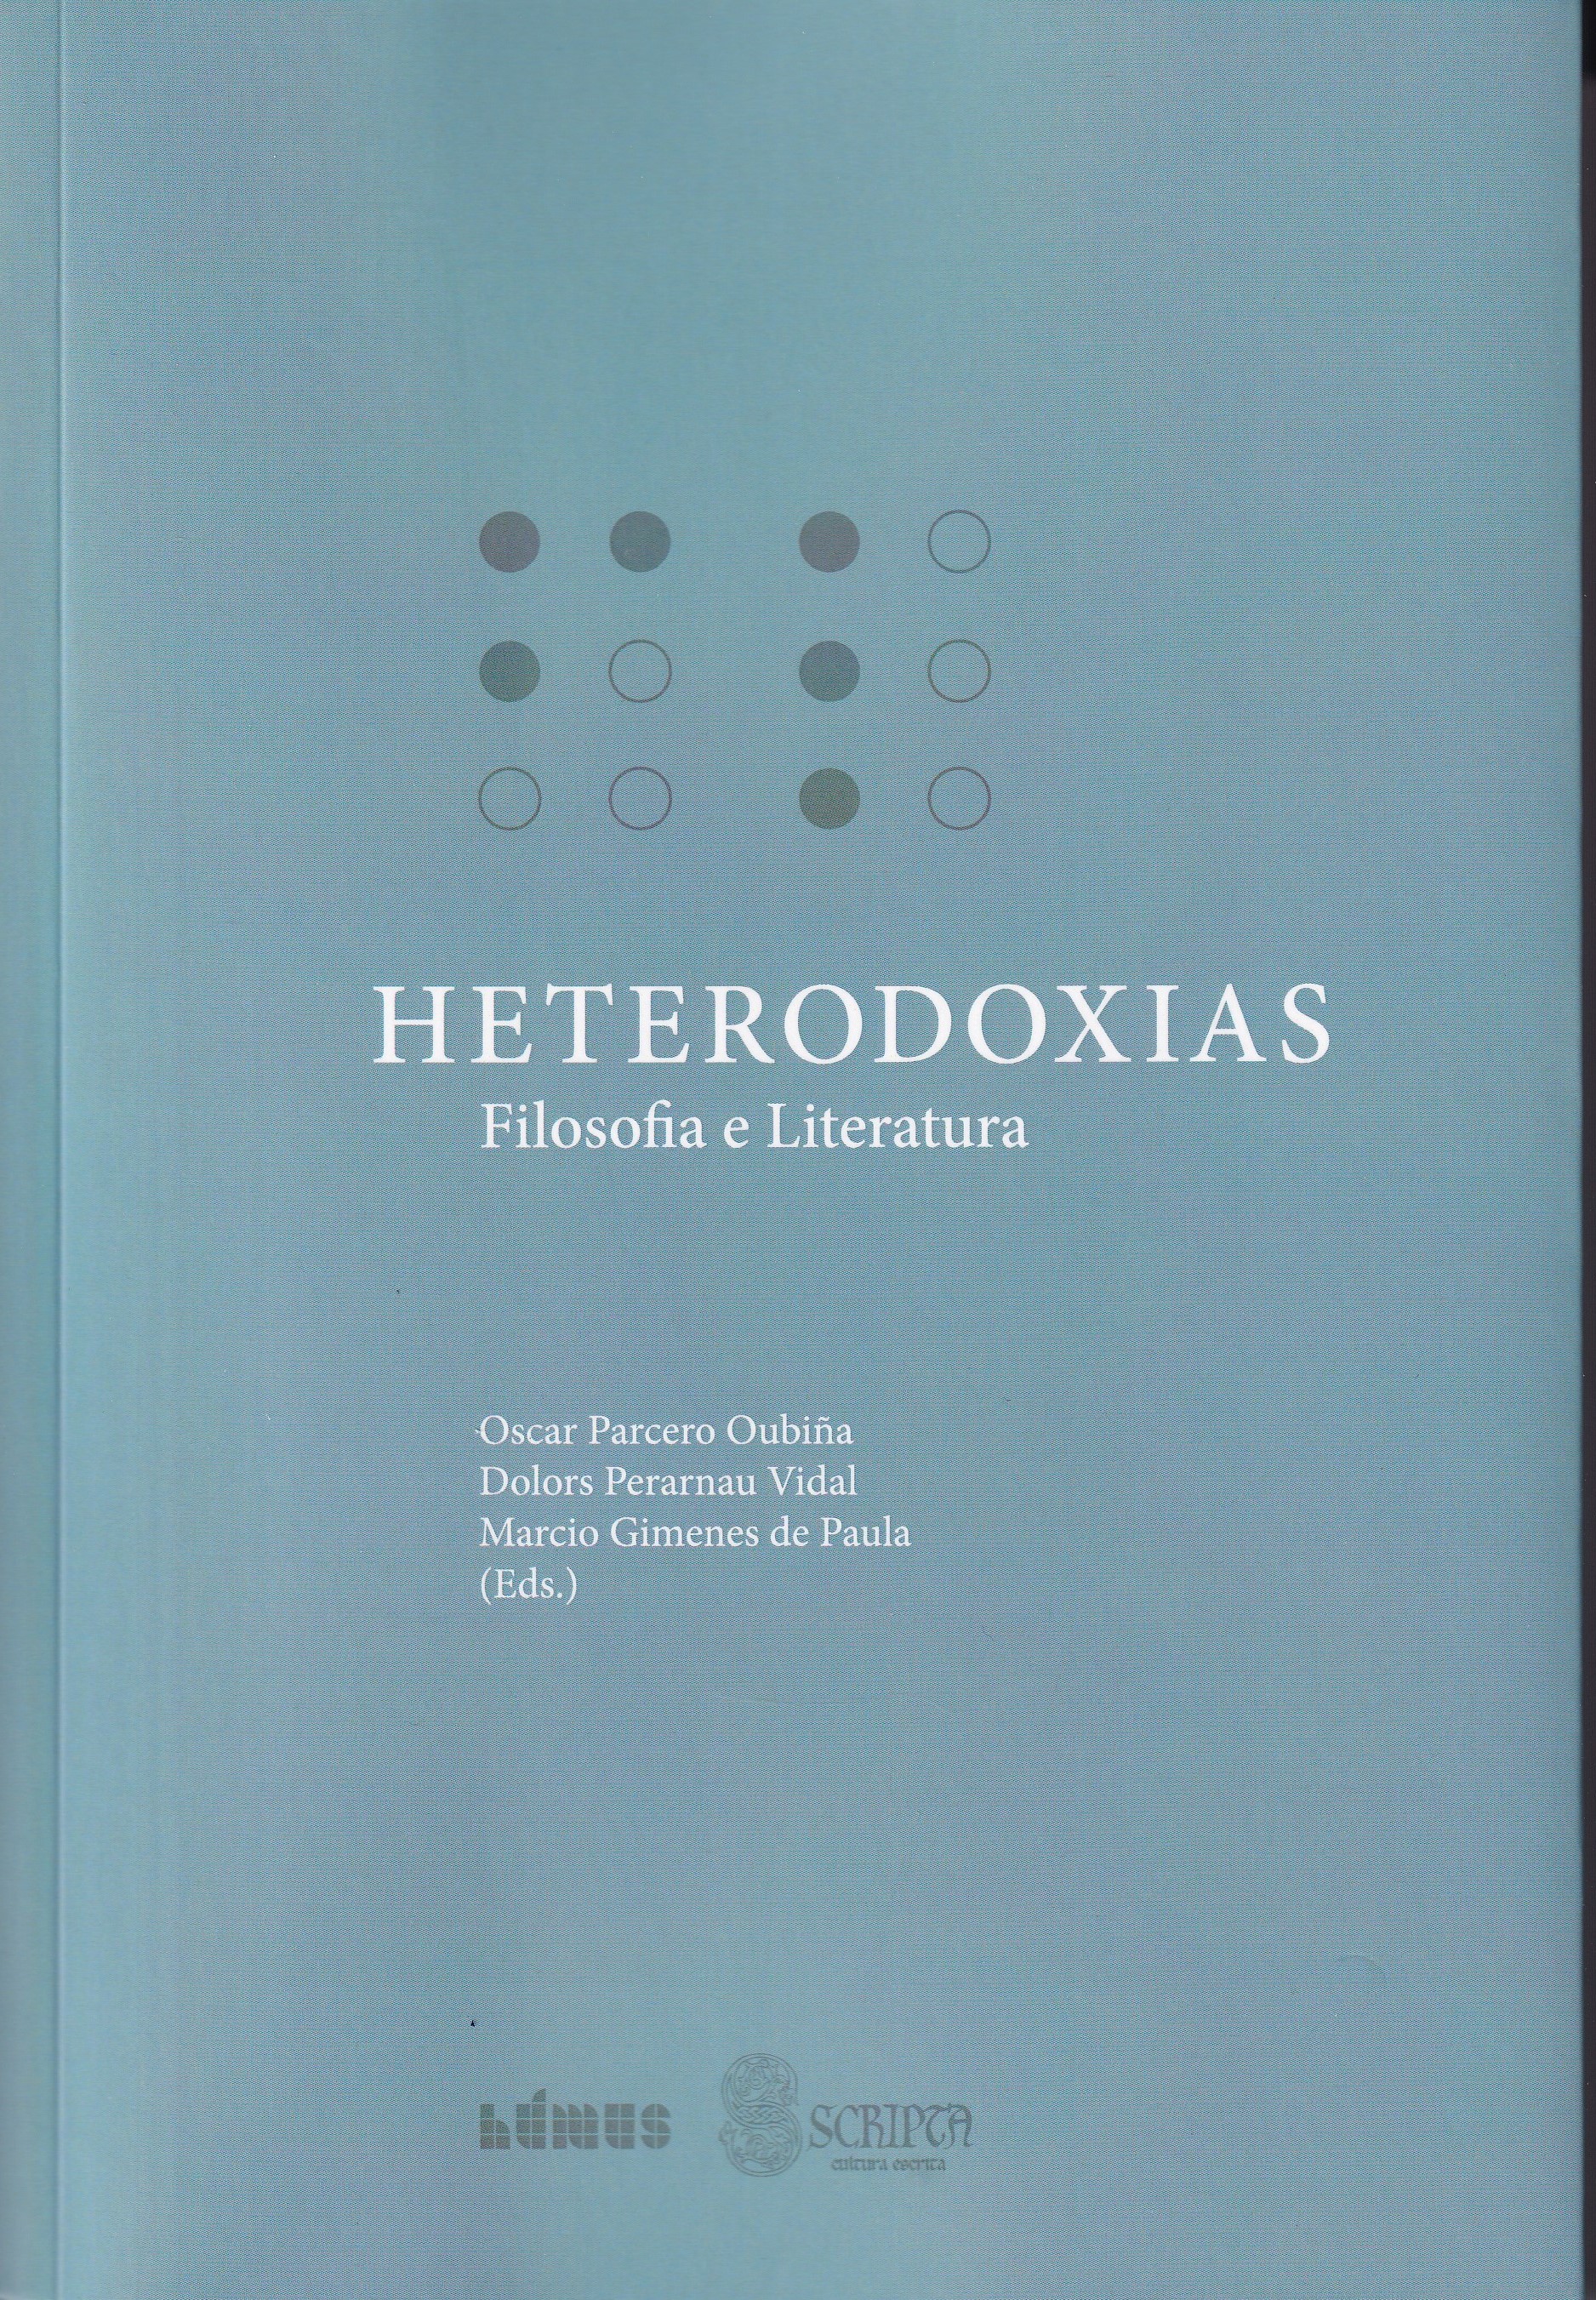 Imagen de portada del libro Heterodoxias